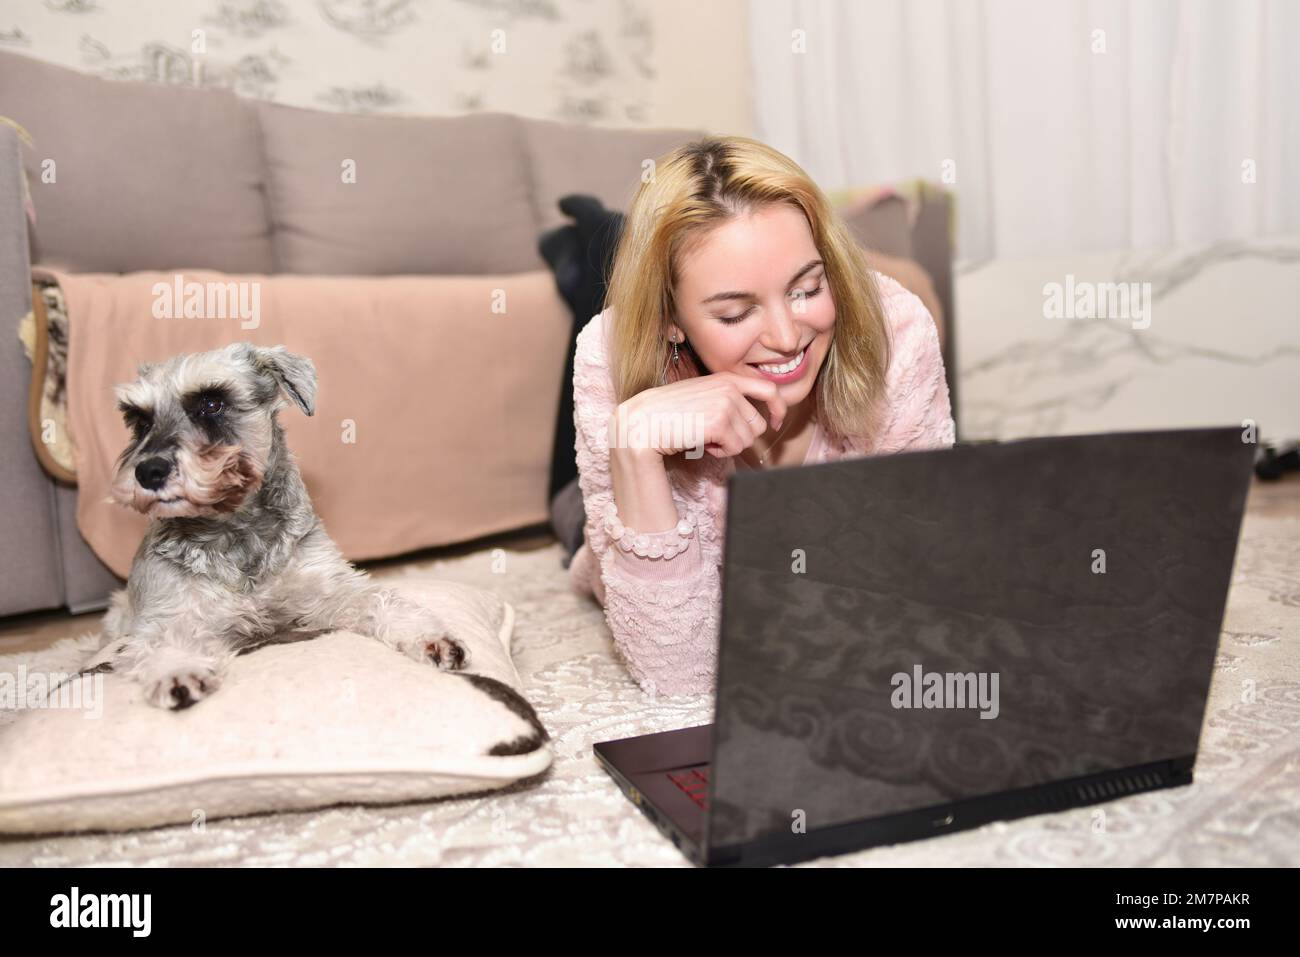 Une jeune femme blonde rit à la maison avec son chien tout en discutant avec quelqu'un par le biais d'un appel vidéo sur un ordinateur portable. Banque D'Images